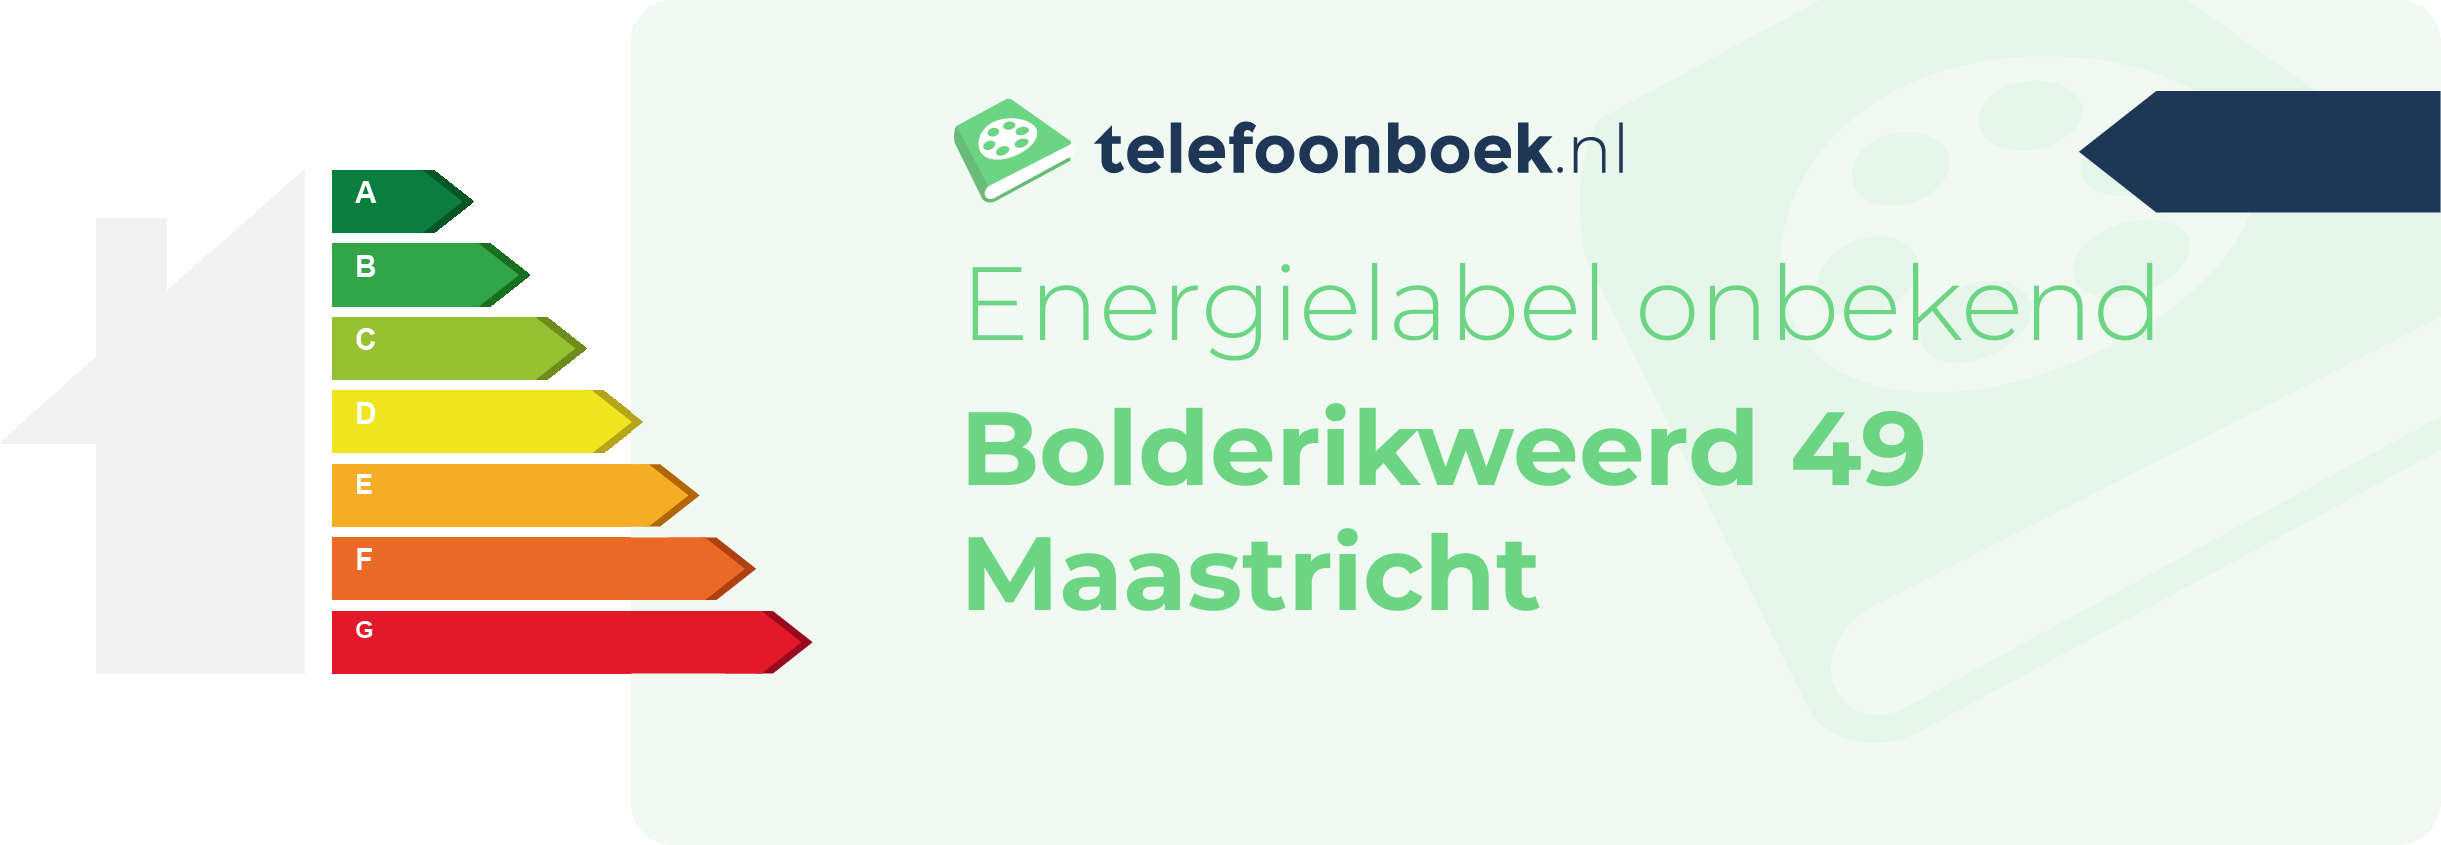 Energielabel Bolderikweerd 49 Maastricht